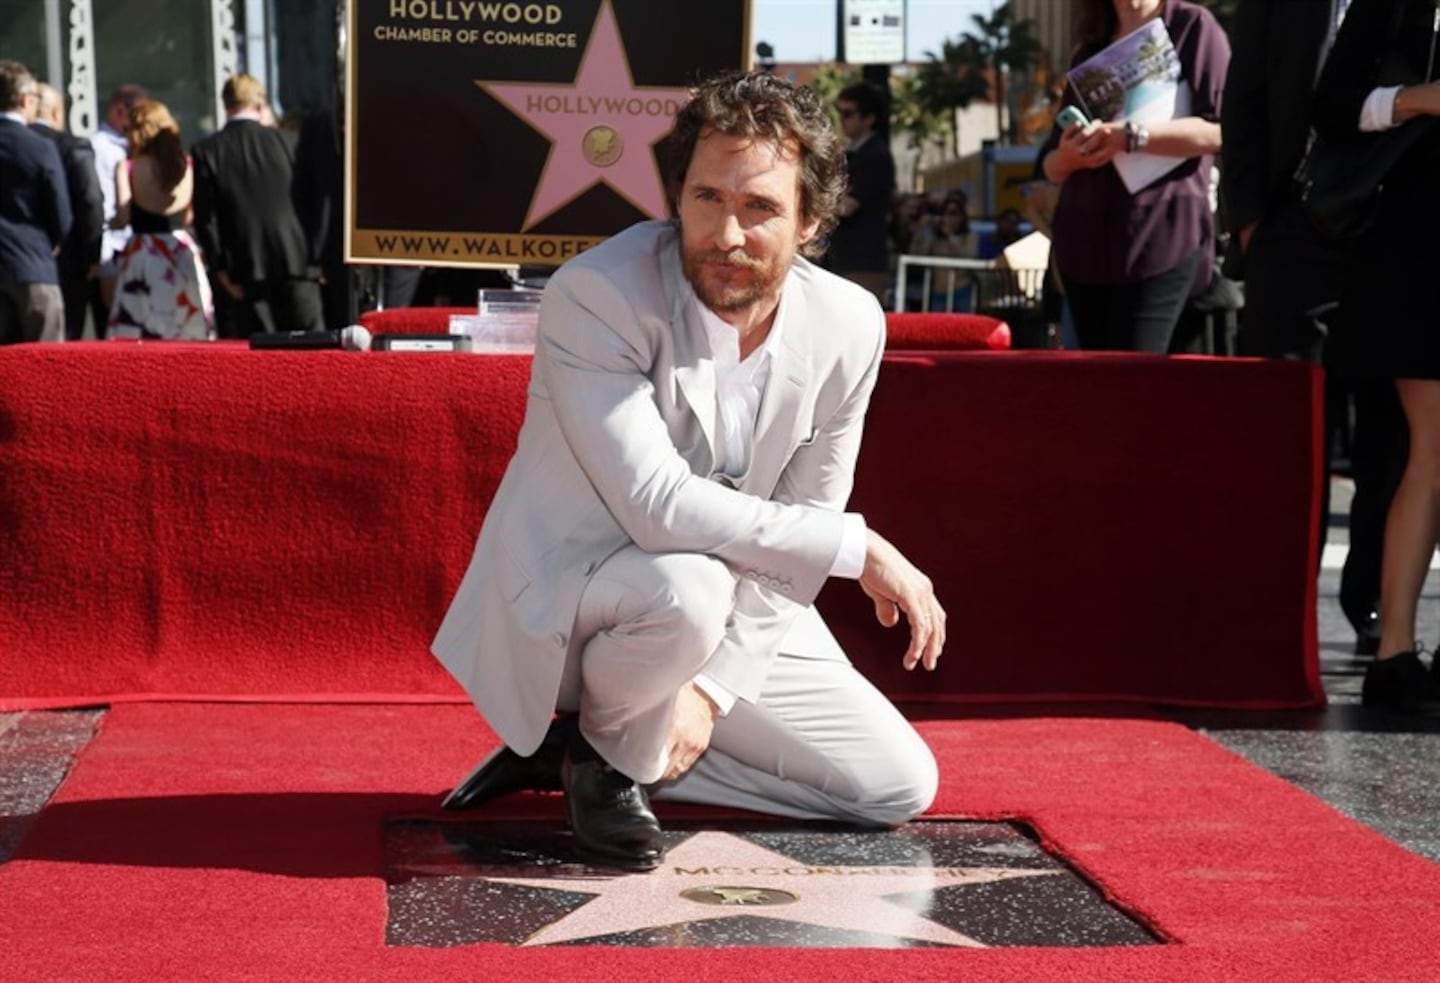 El actor Matthew McConaughey tiene una estrella en el Paseo de la fama